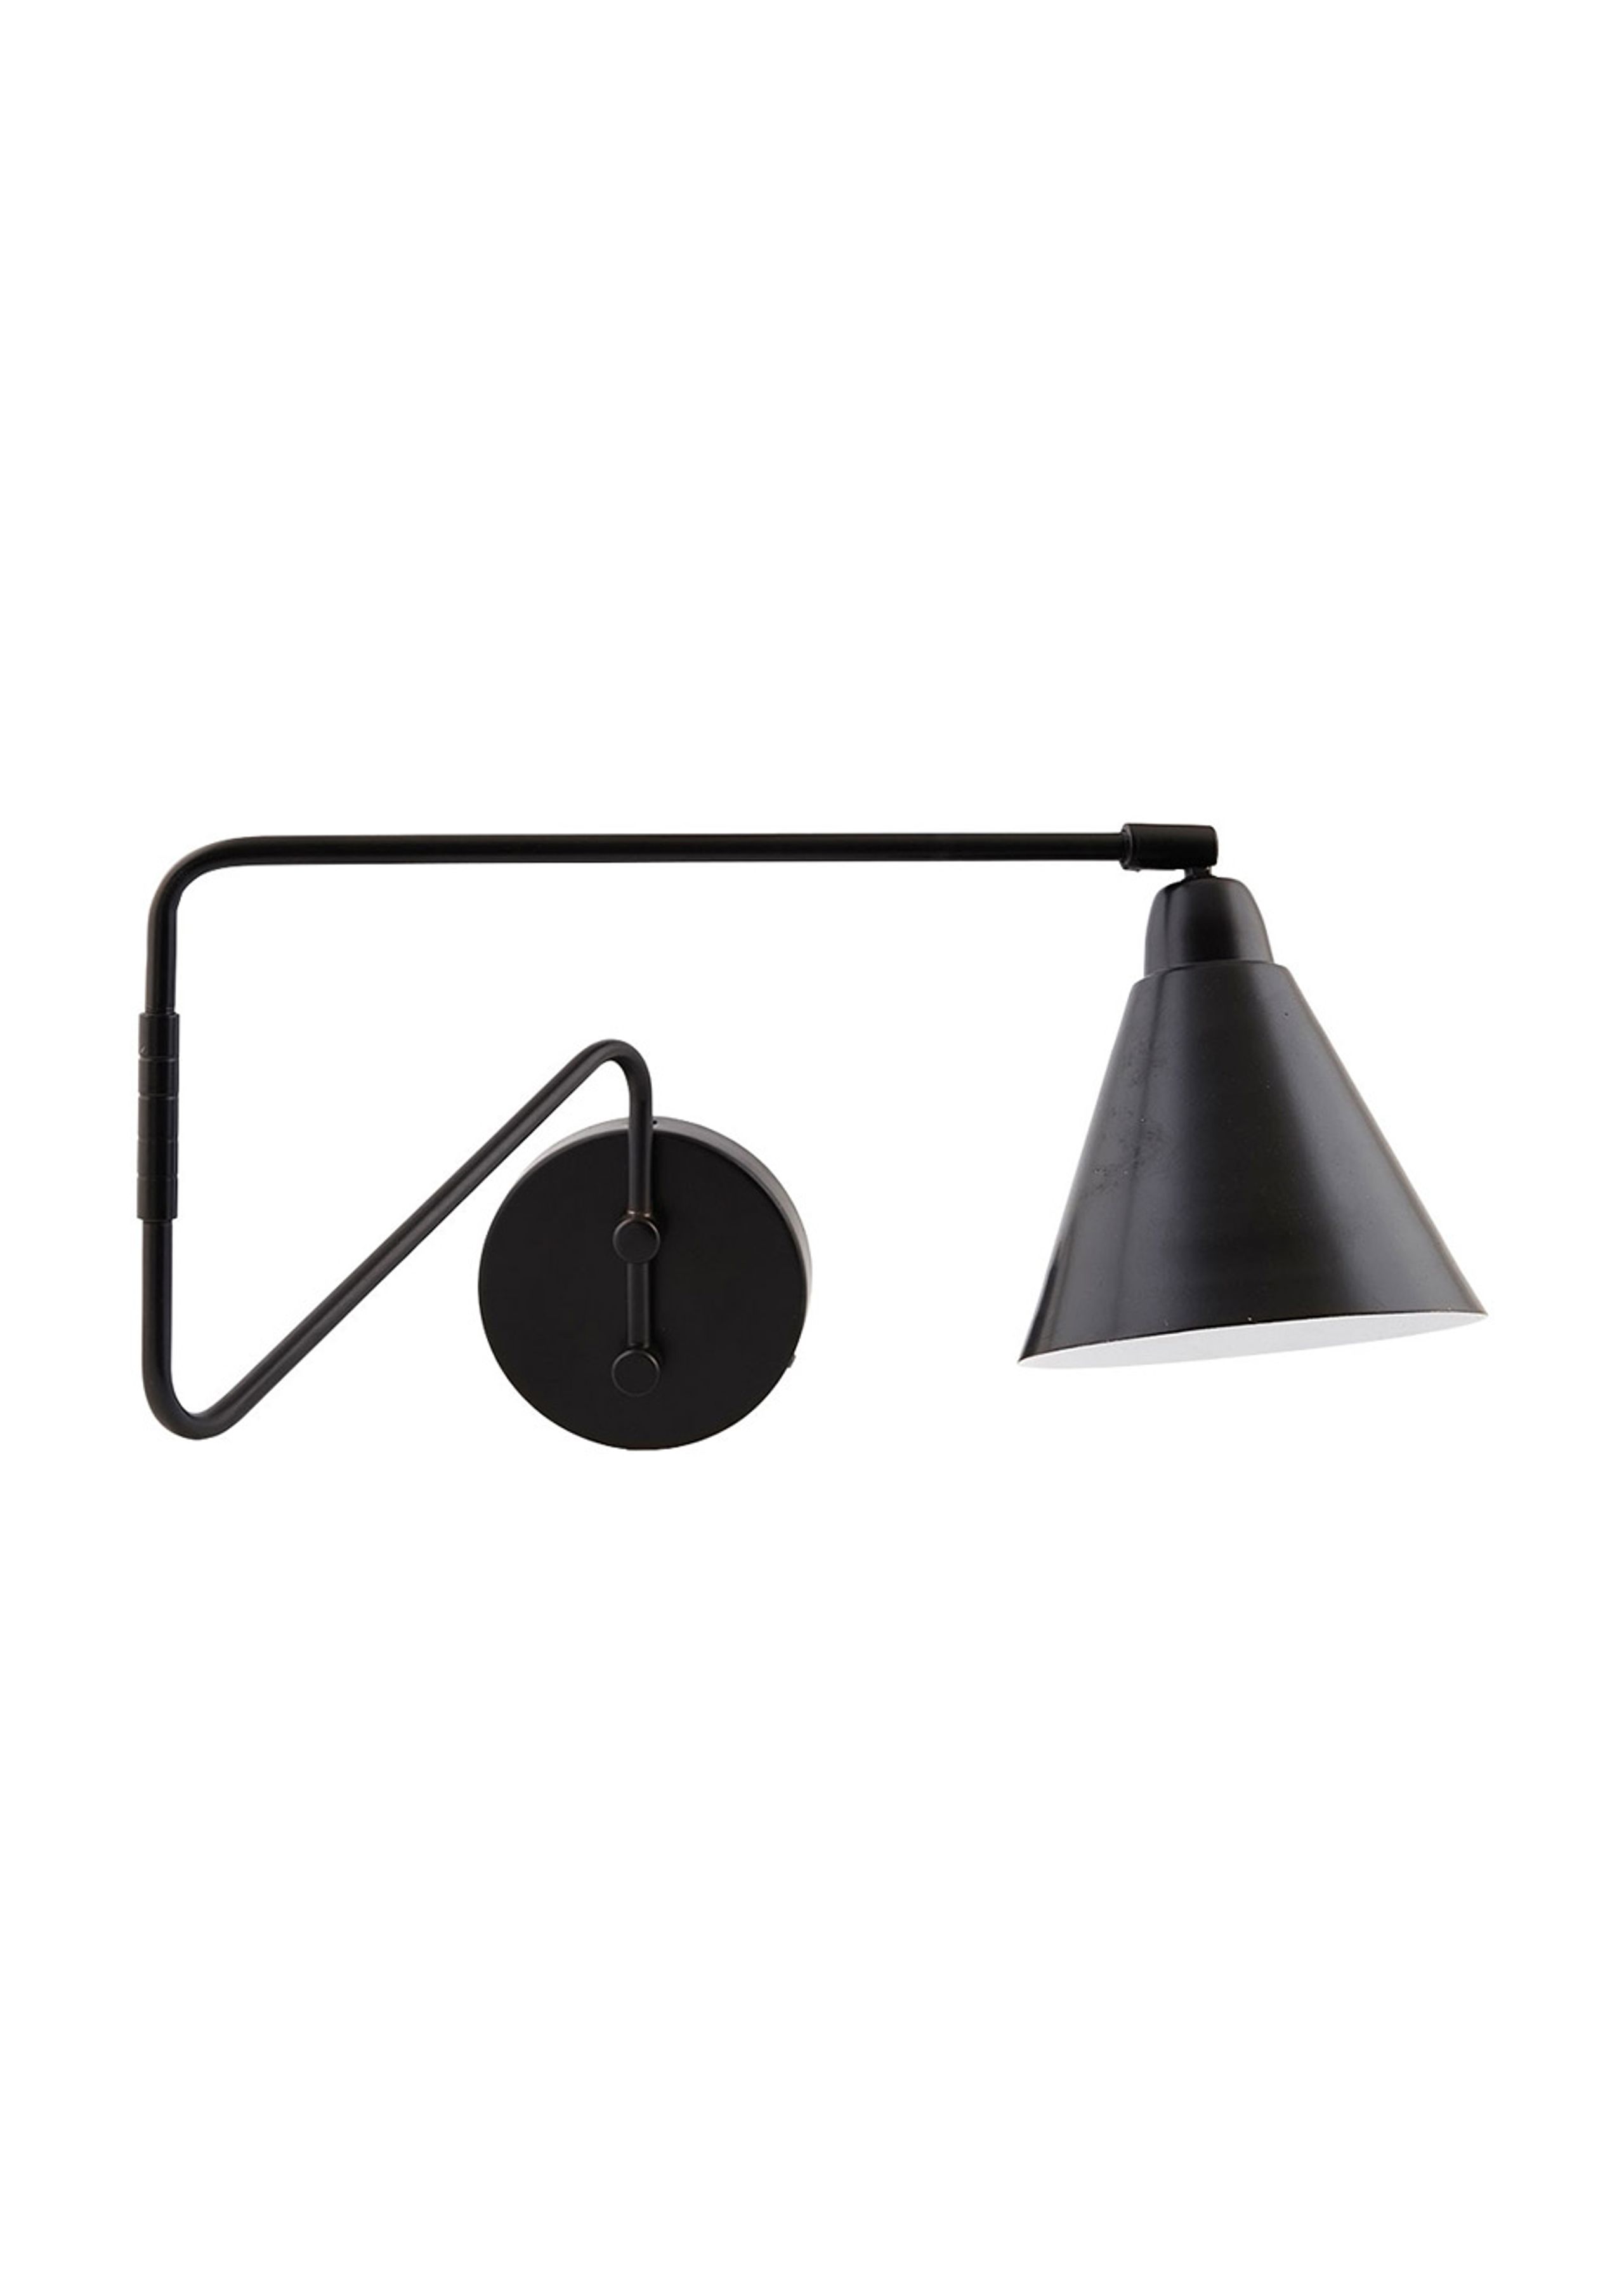 House doctor - Lâmpada de parede - Game Lamp - Large - Black